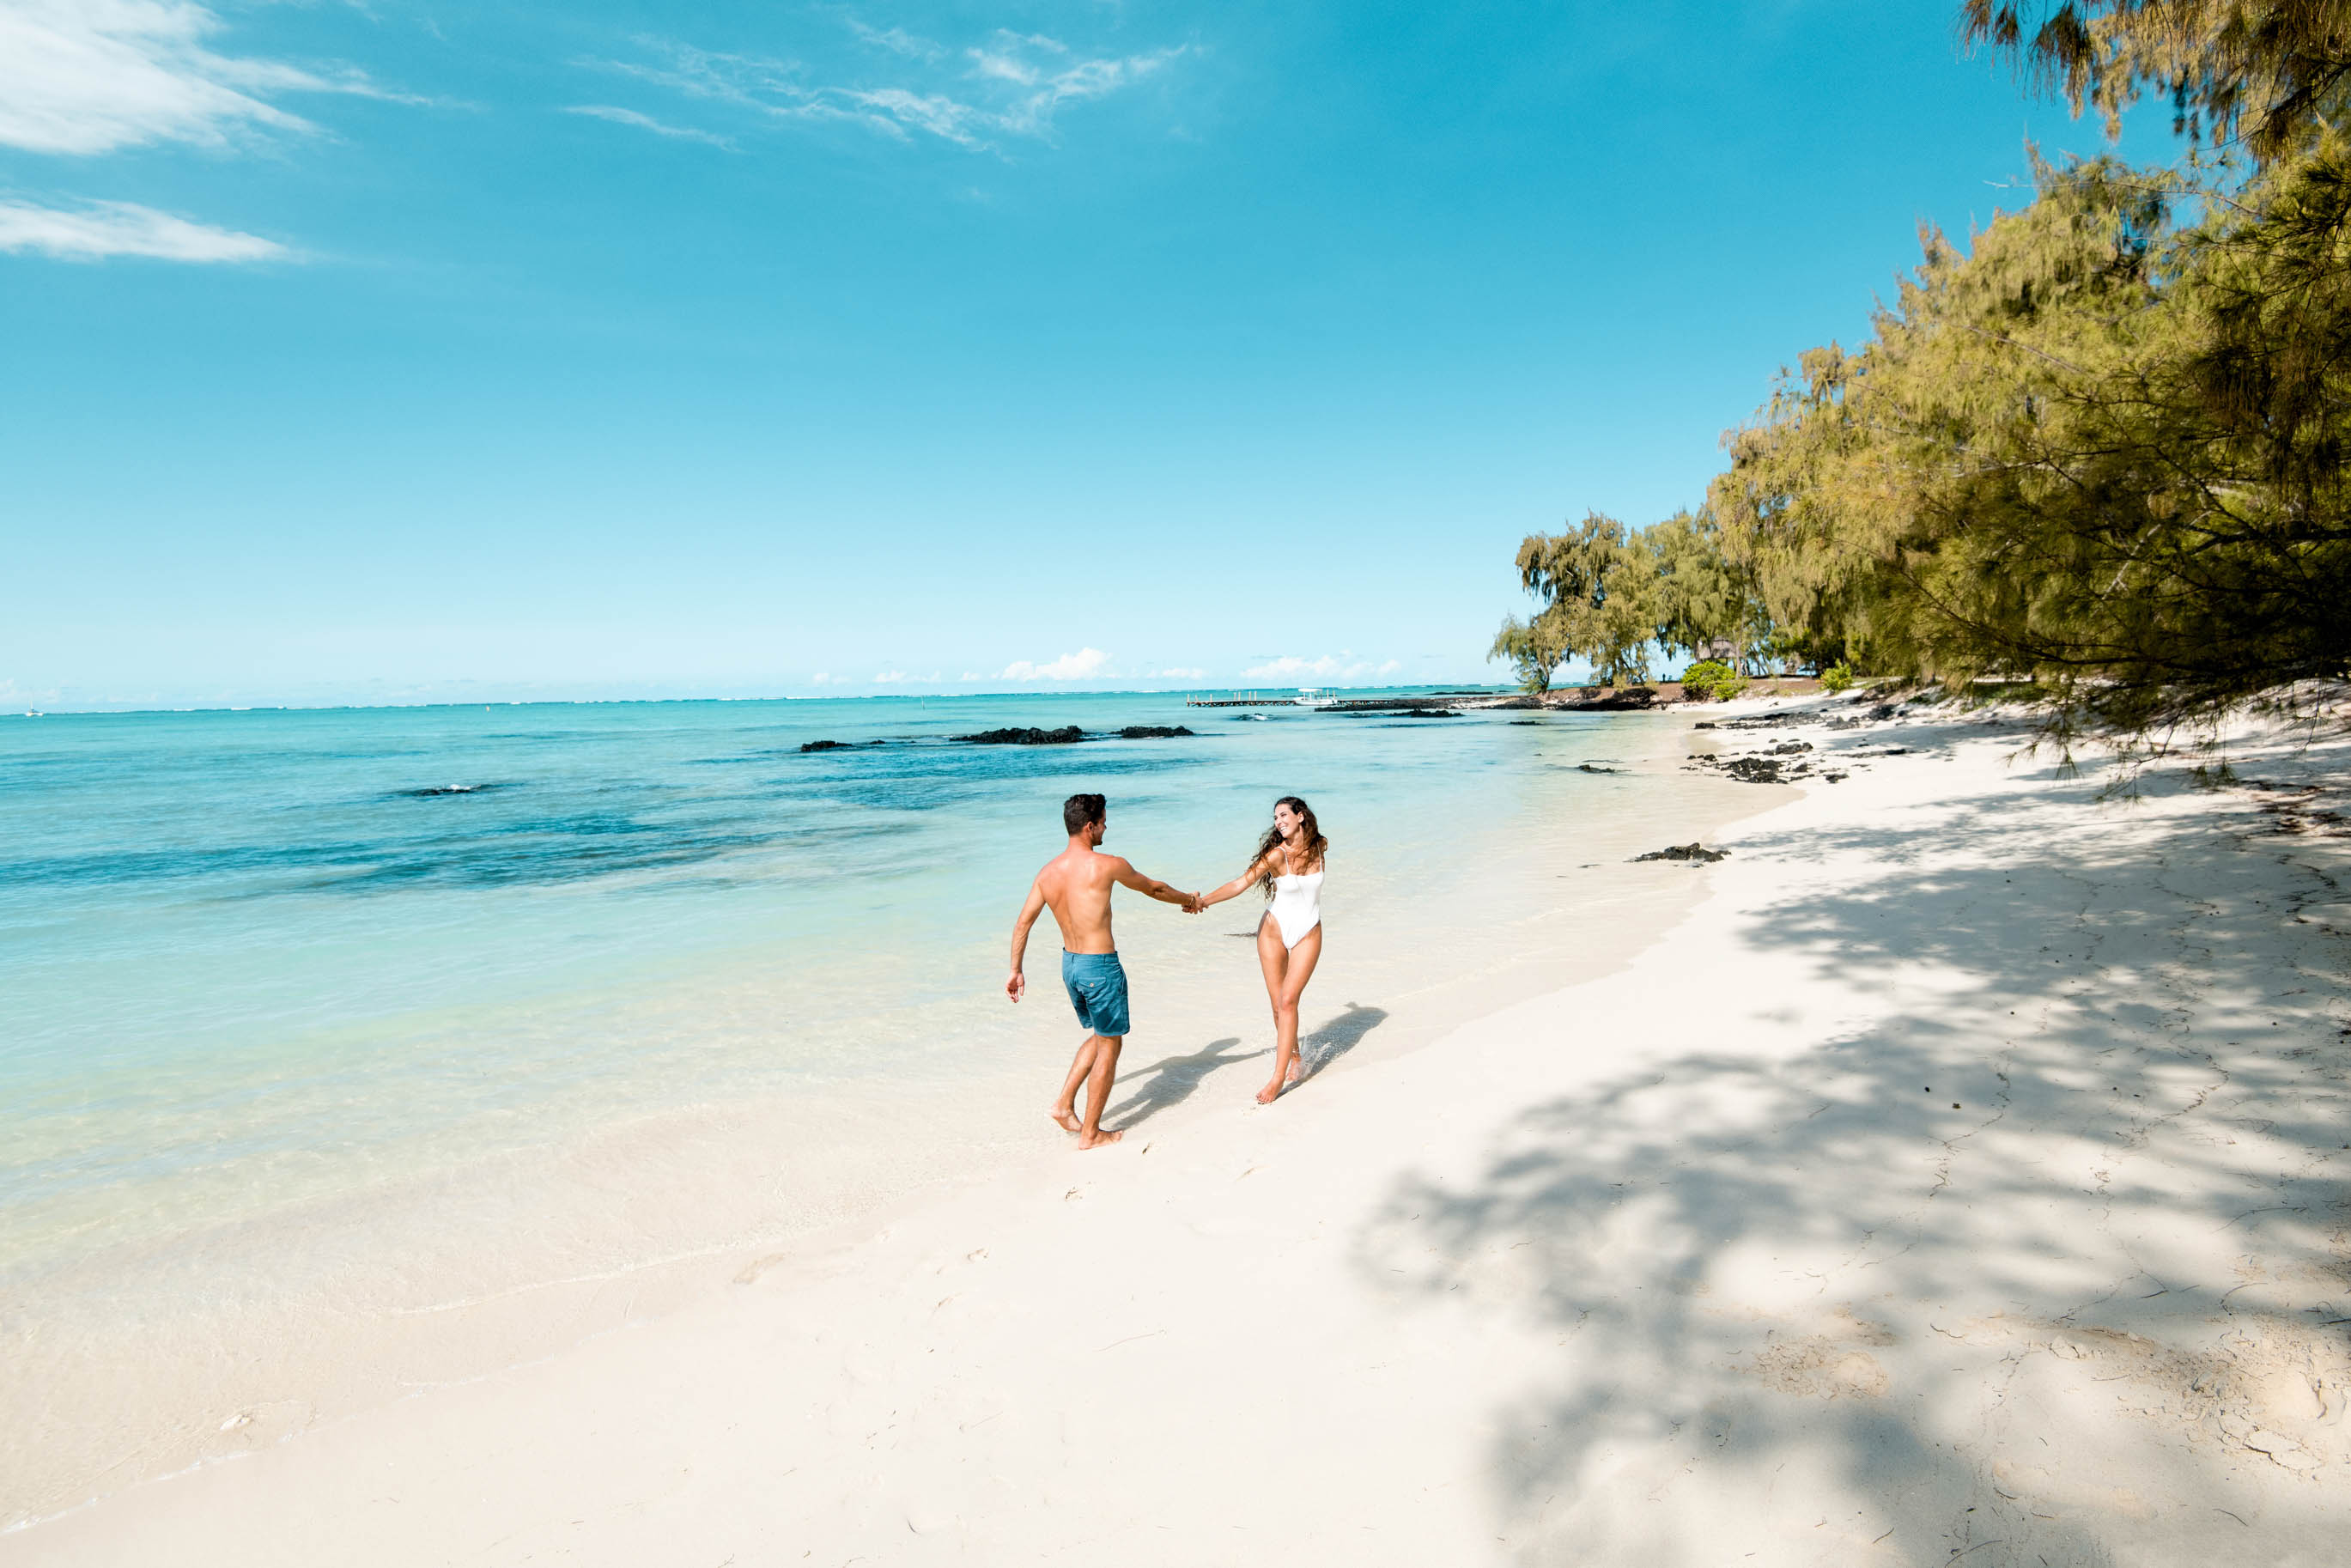 香格里拉毛里求斯度假村海滩的照片 具有非常干净级别的清洁度